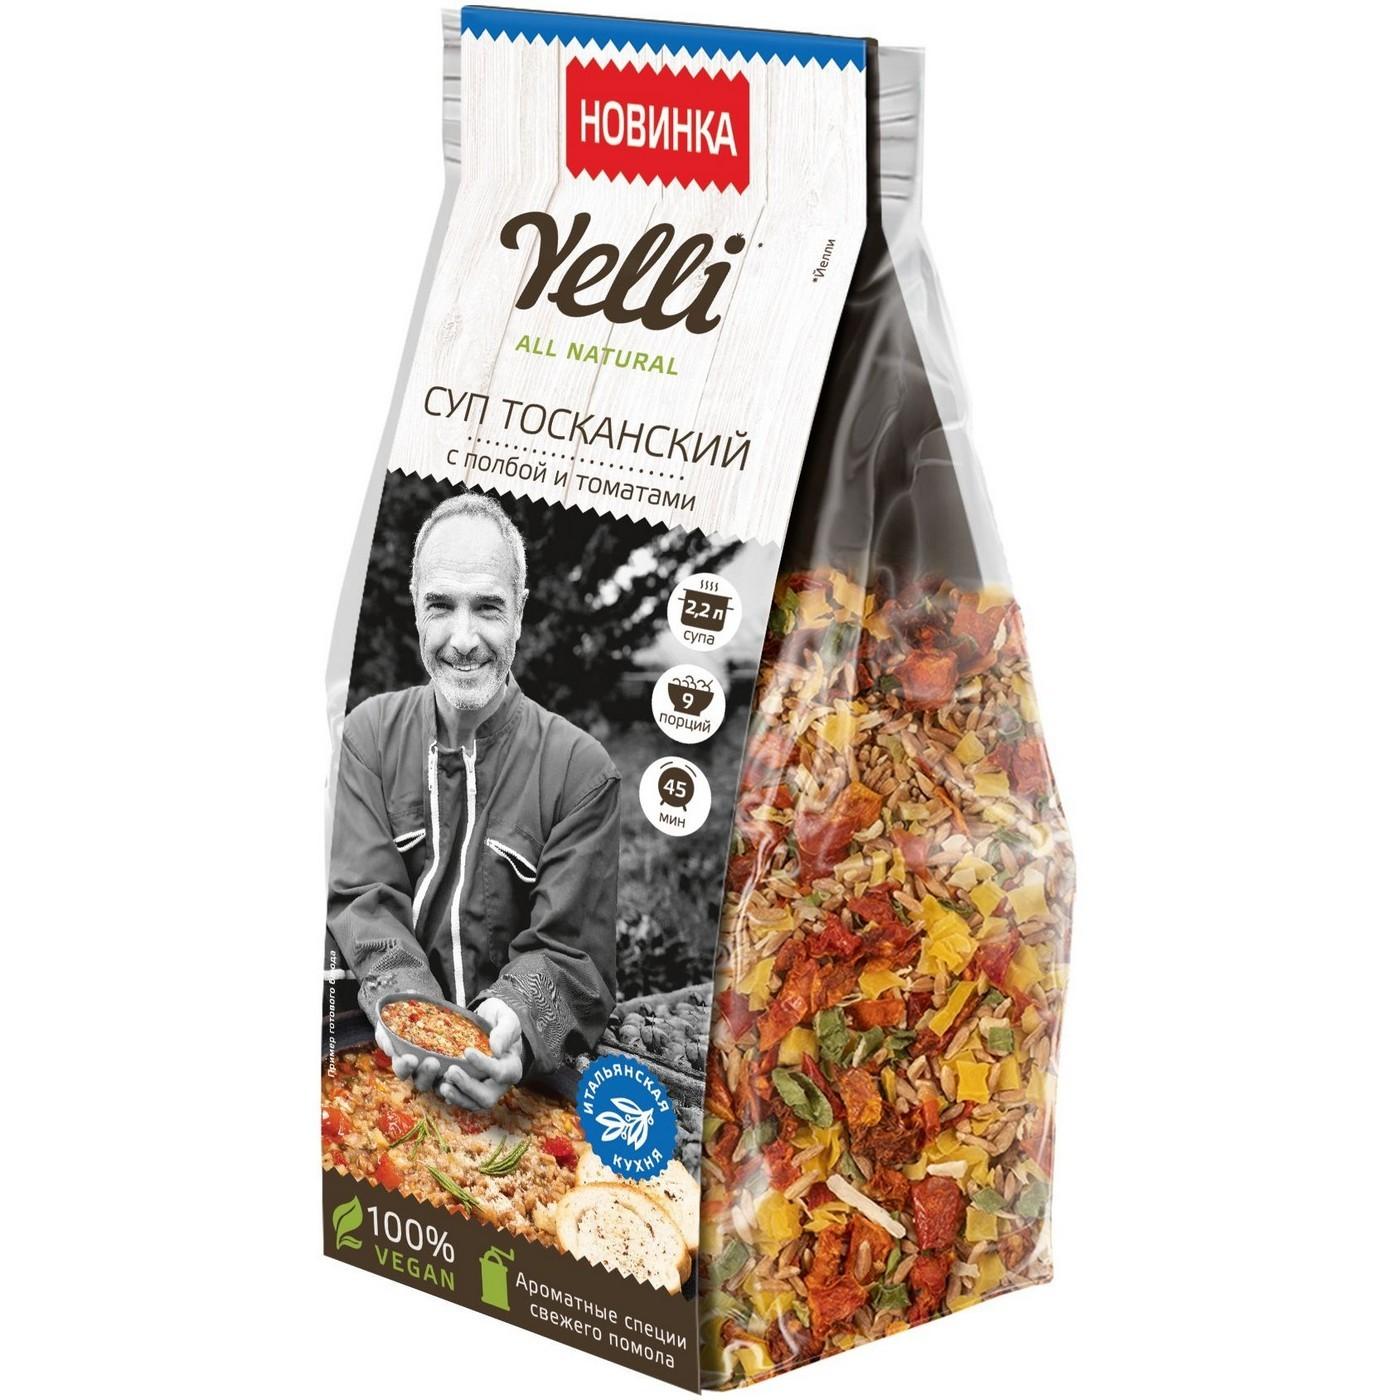 Суп Yelli Тосканский с полбой и томатами 200 гр., пакет